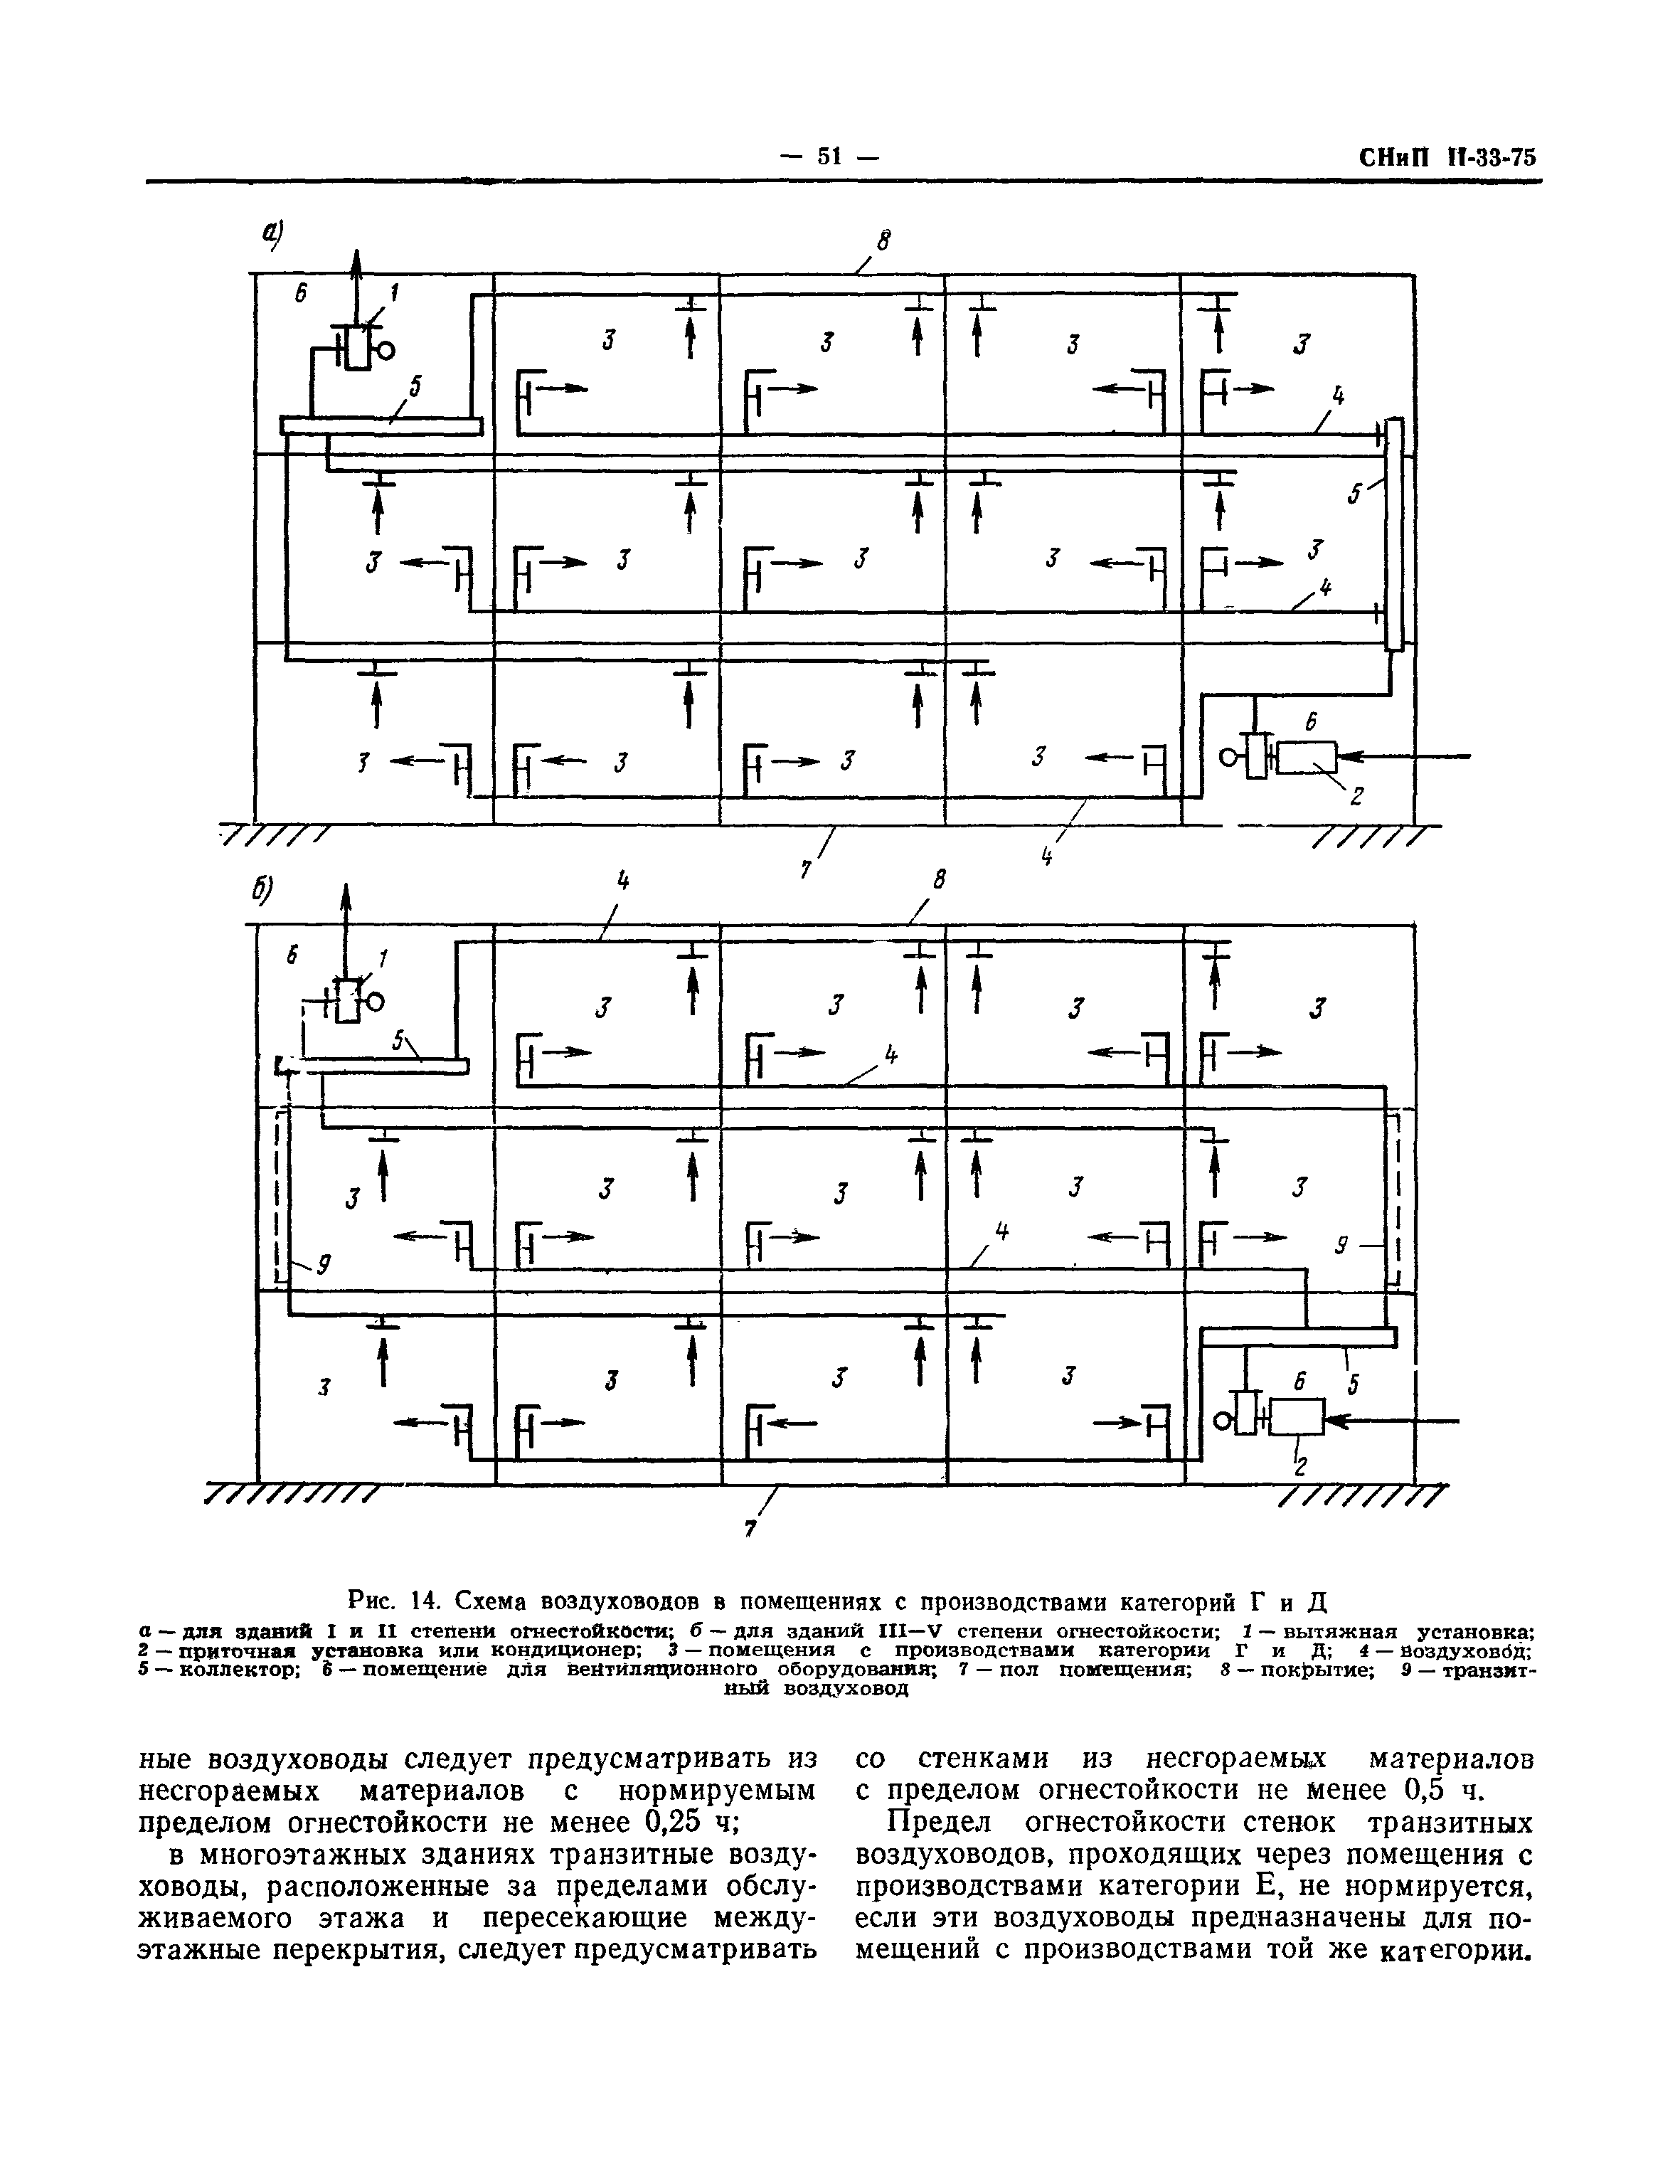 СНиП II-33-75